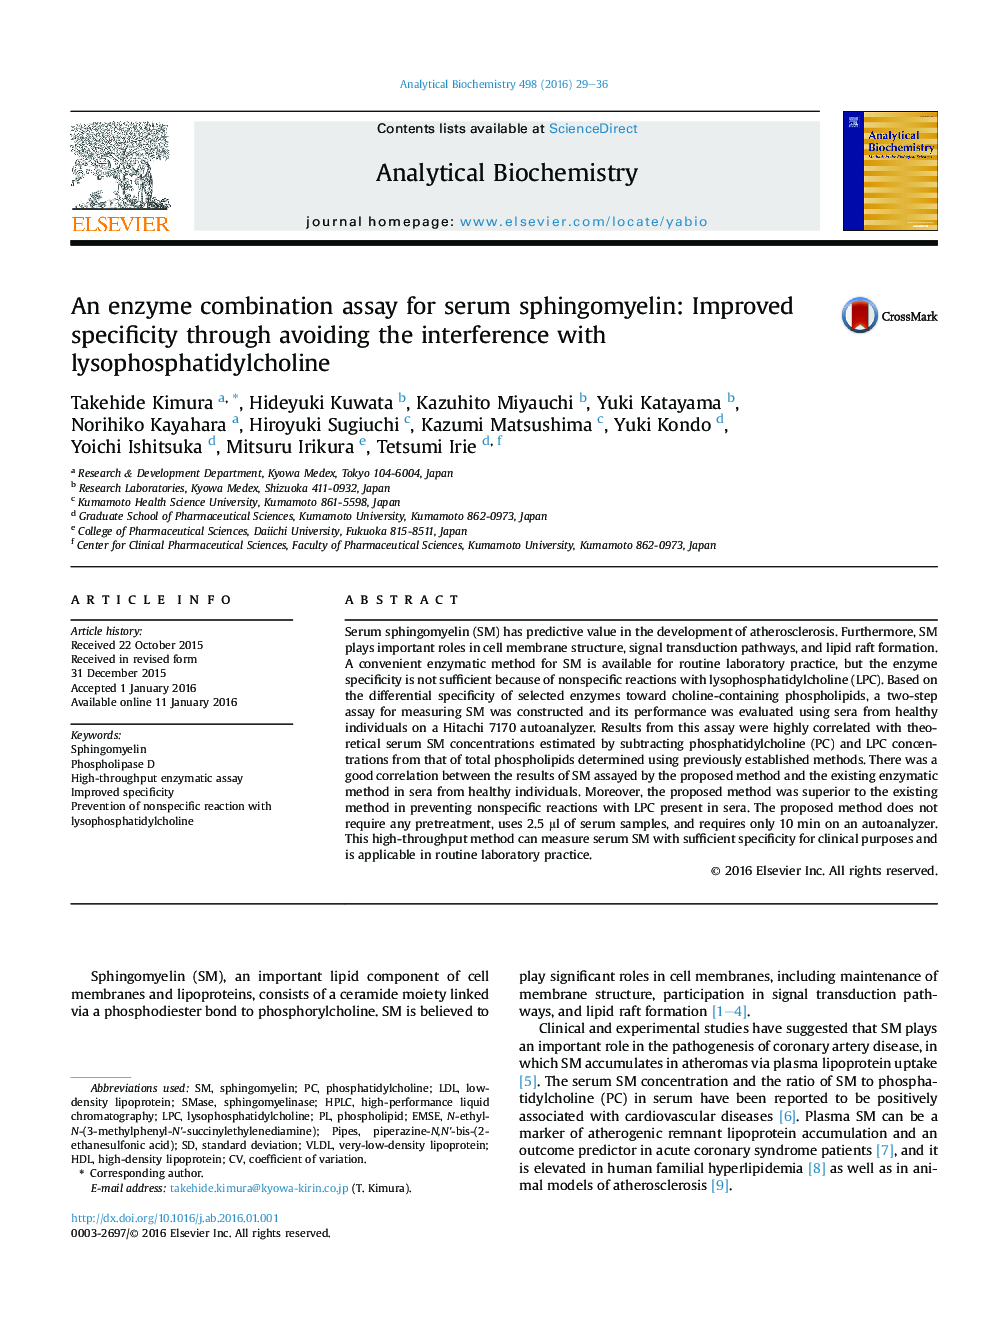 آزمایش ترکیبی آنزیمی برای اسپینگومایین سرم: از طریق تضعیف تداخل با لیسففسفیدیدیل کولین 